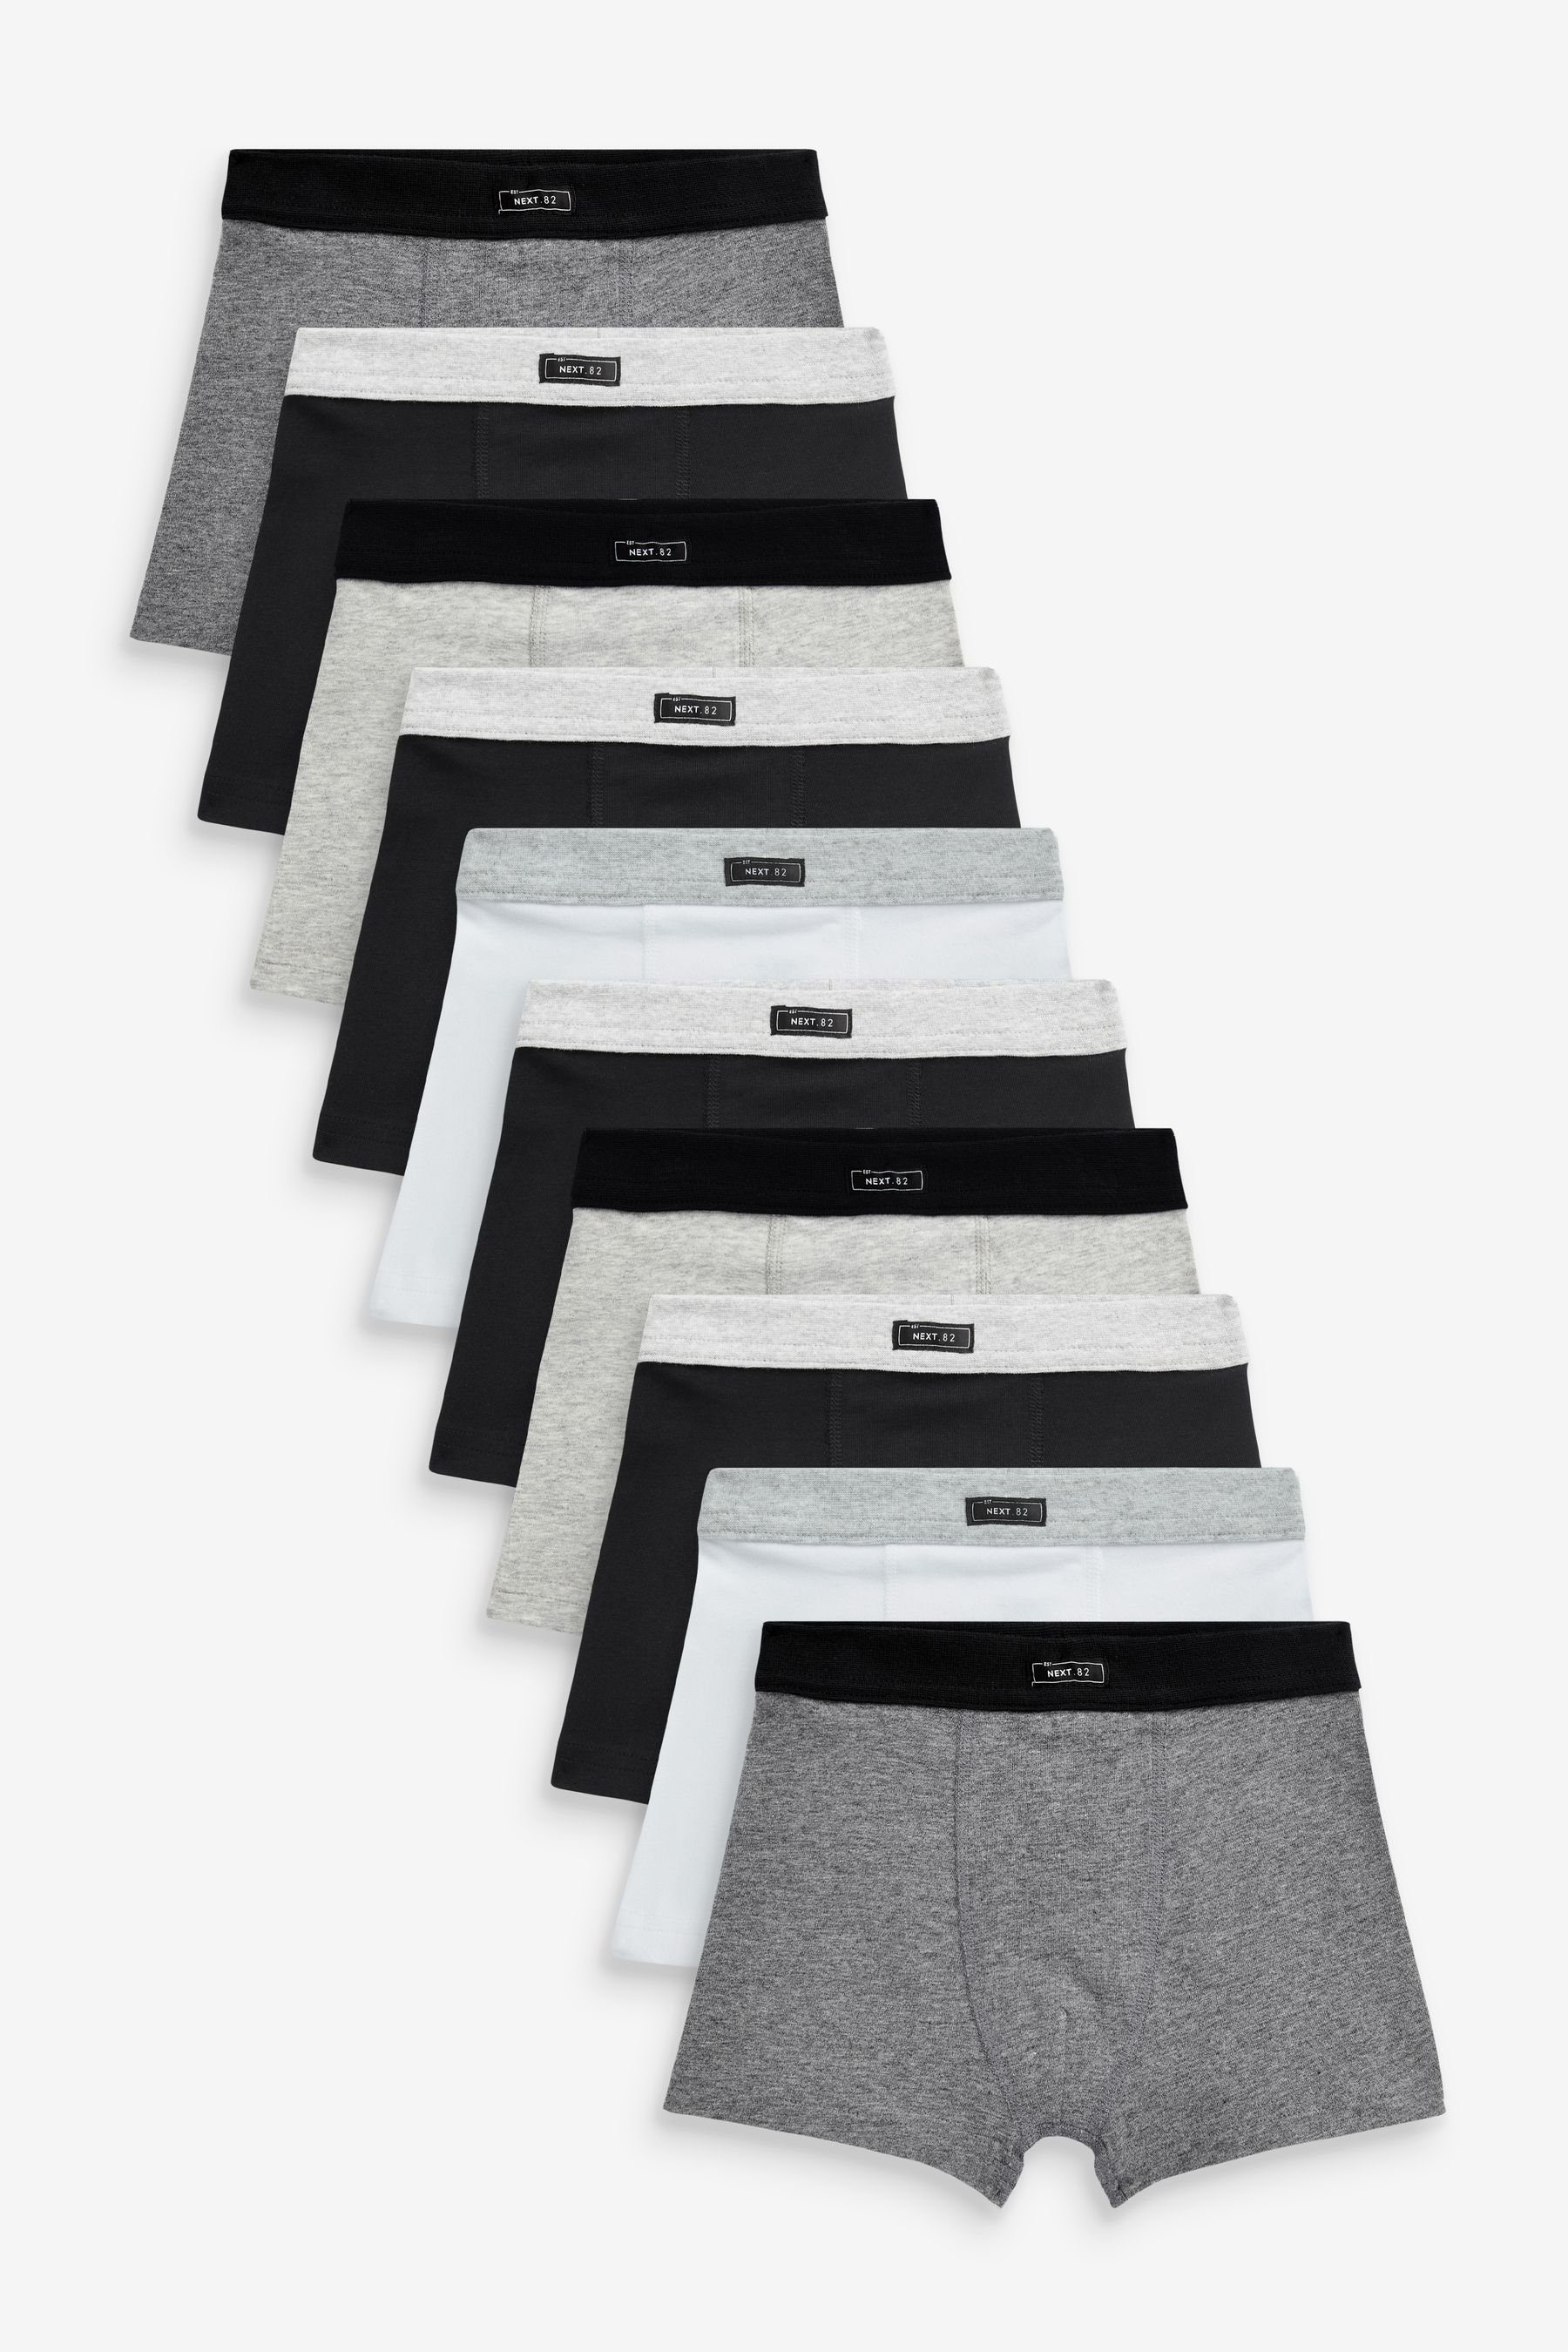 Next Trunk Unterhosen, 10er-Pack (10-St) Black/Grey/White